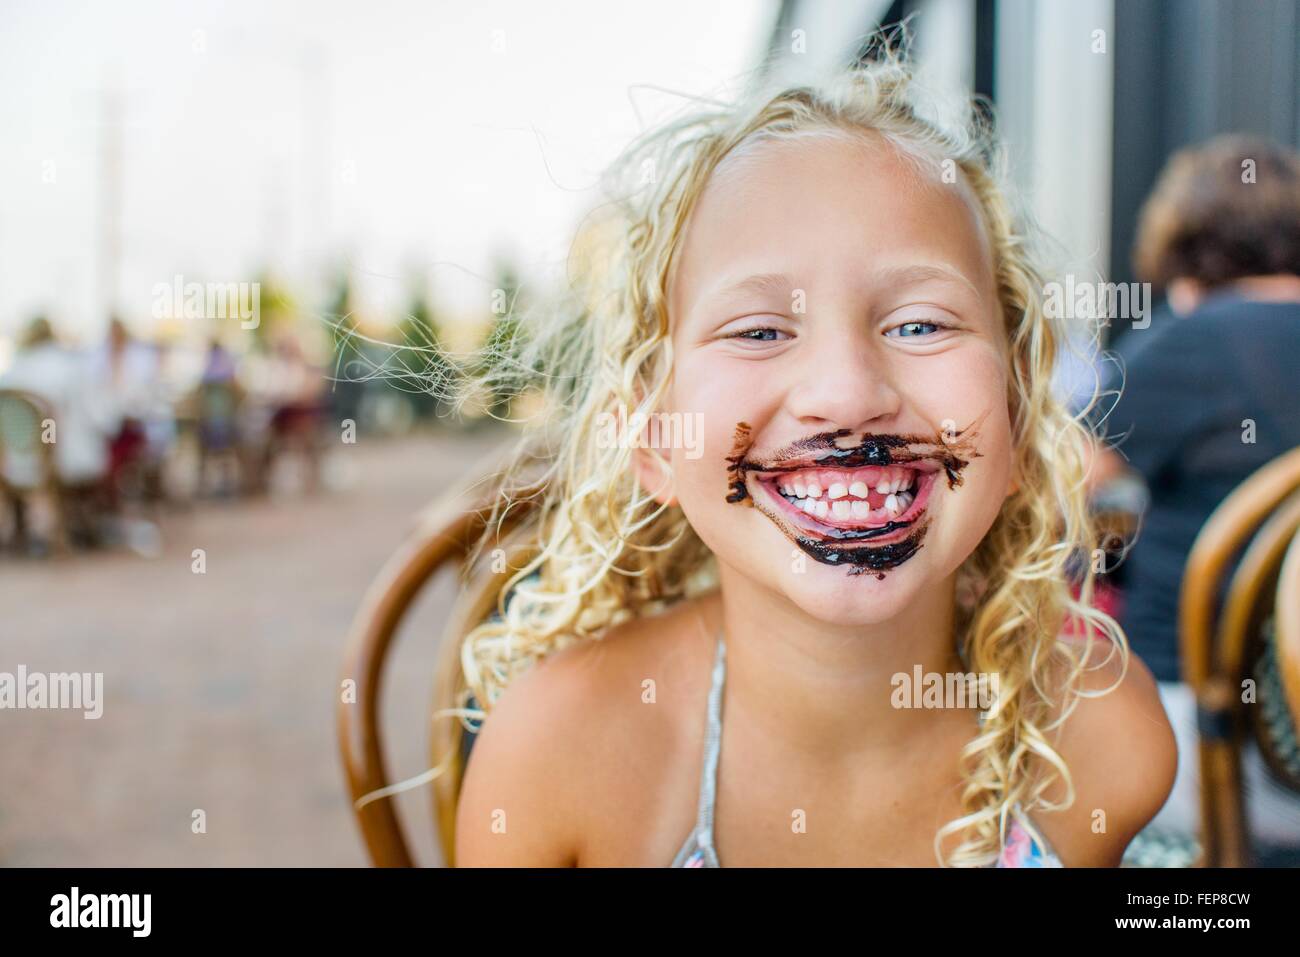 Portrait de jeune fille blonde at sidewalk cafe avec la sauce bouche couverte Banque D'Images